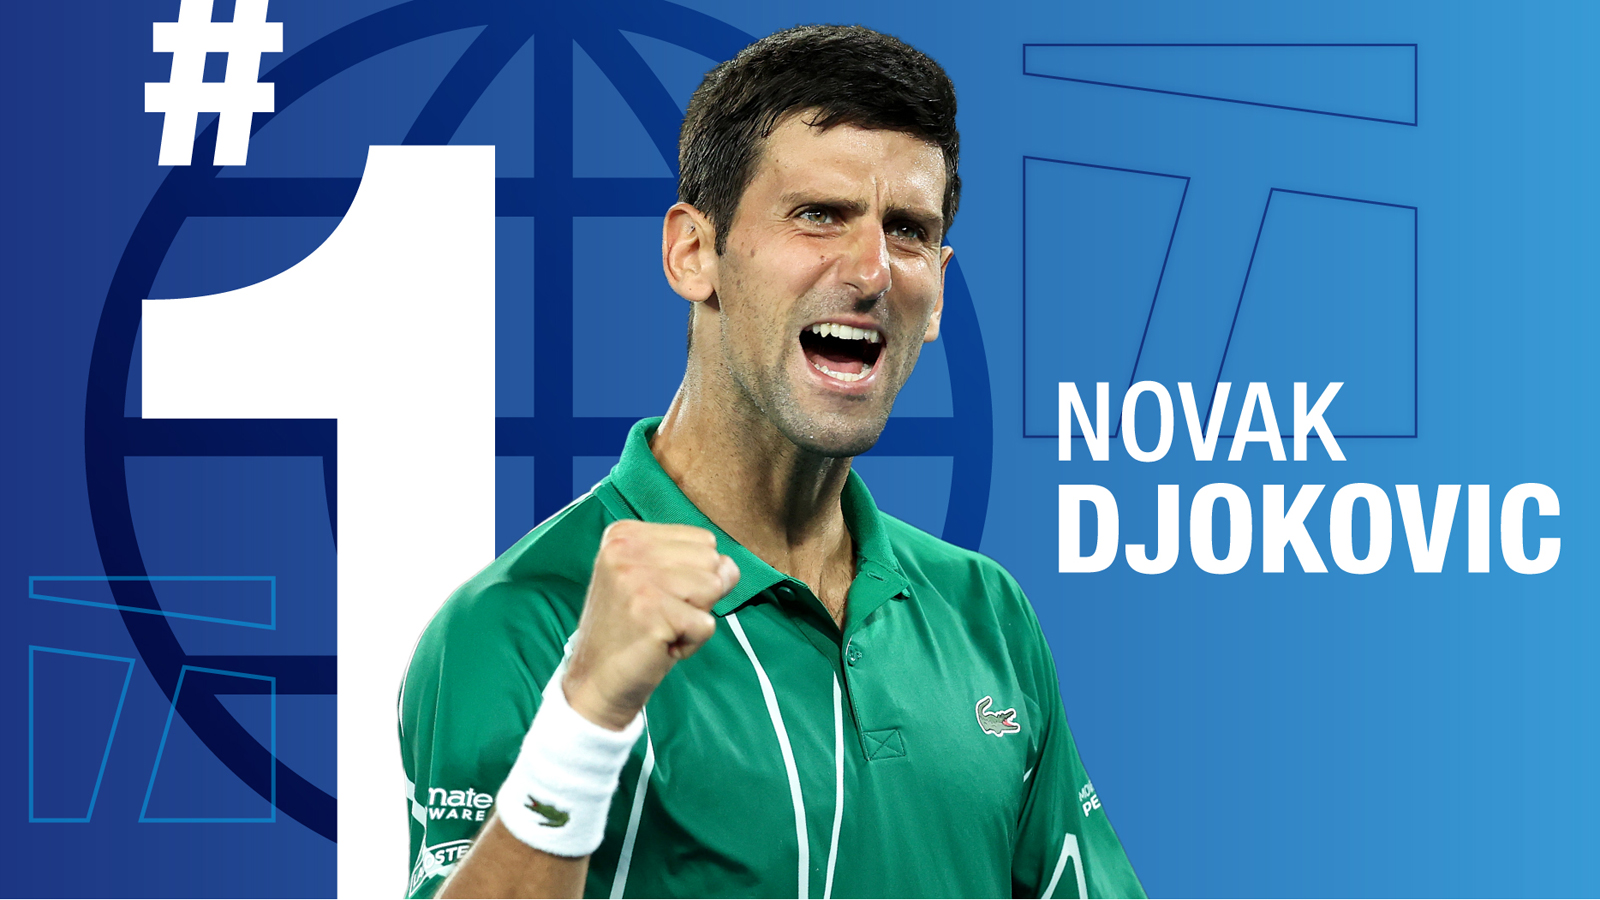 Djokovic và ngưỡng cửa lịch sử ở US Open 2020 - 4